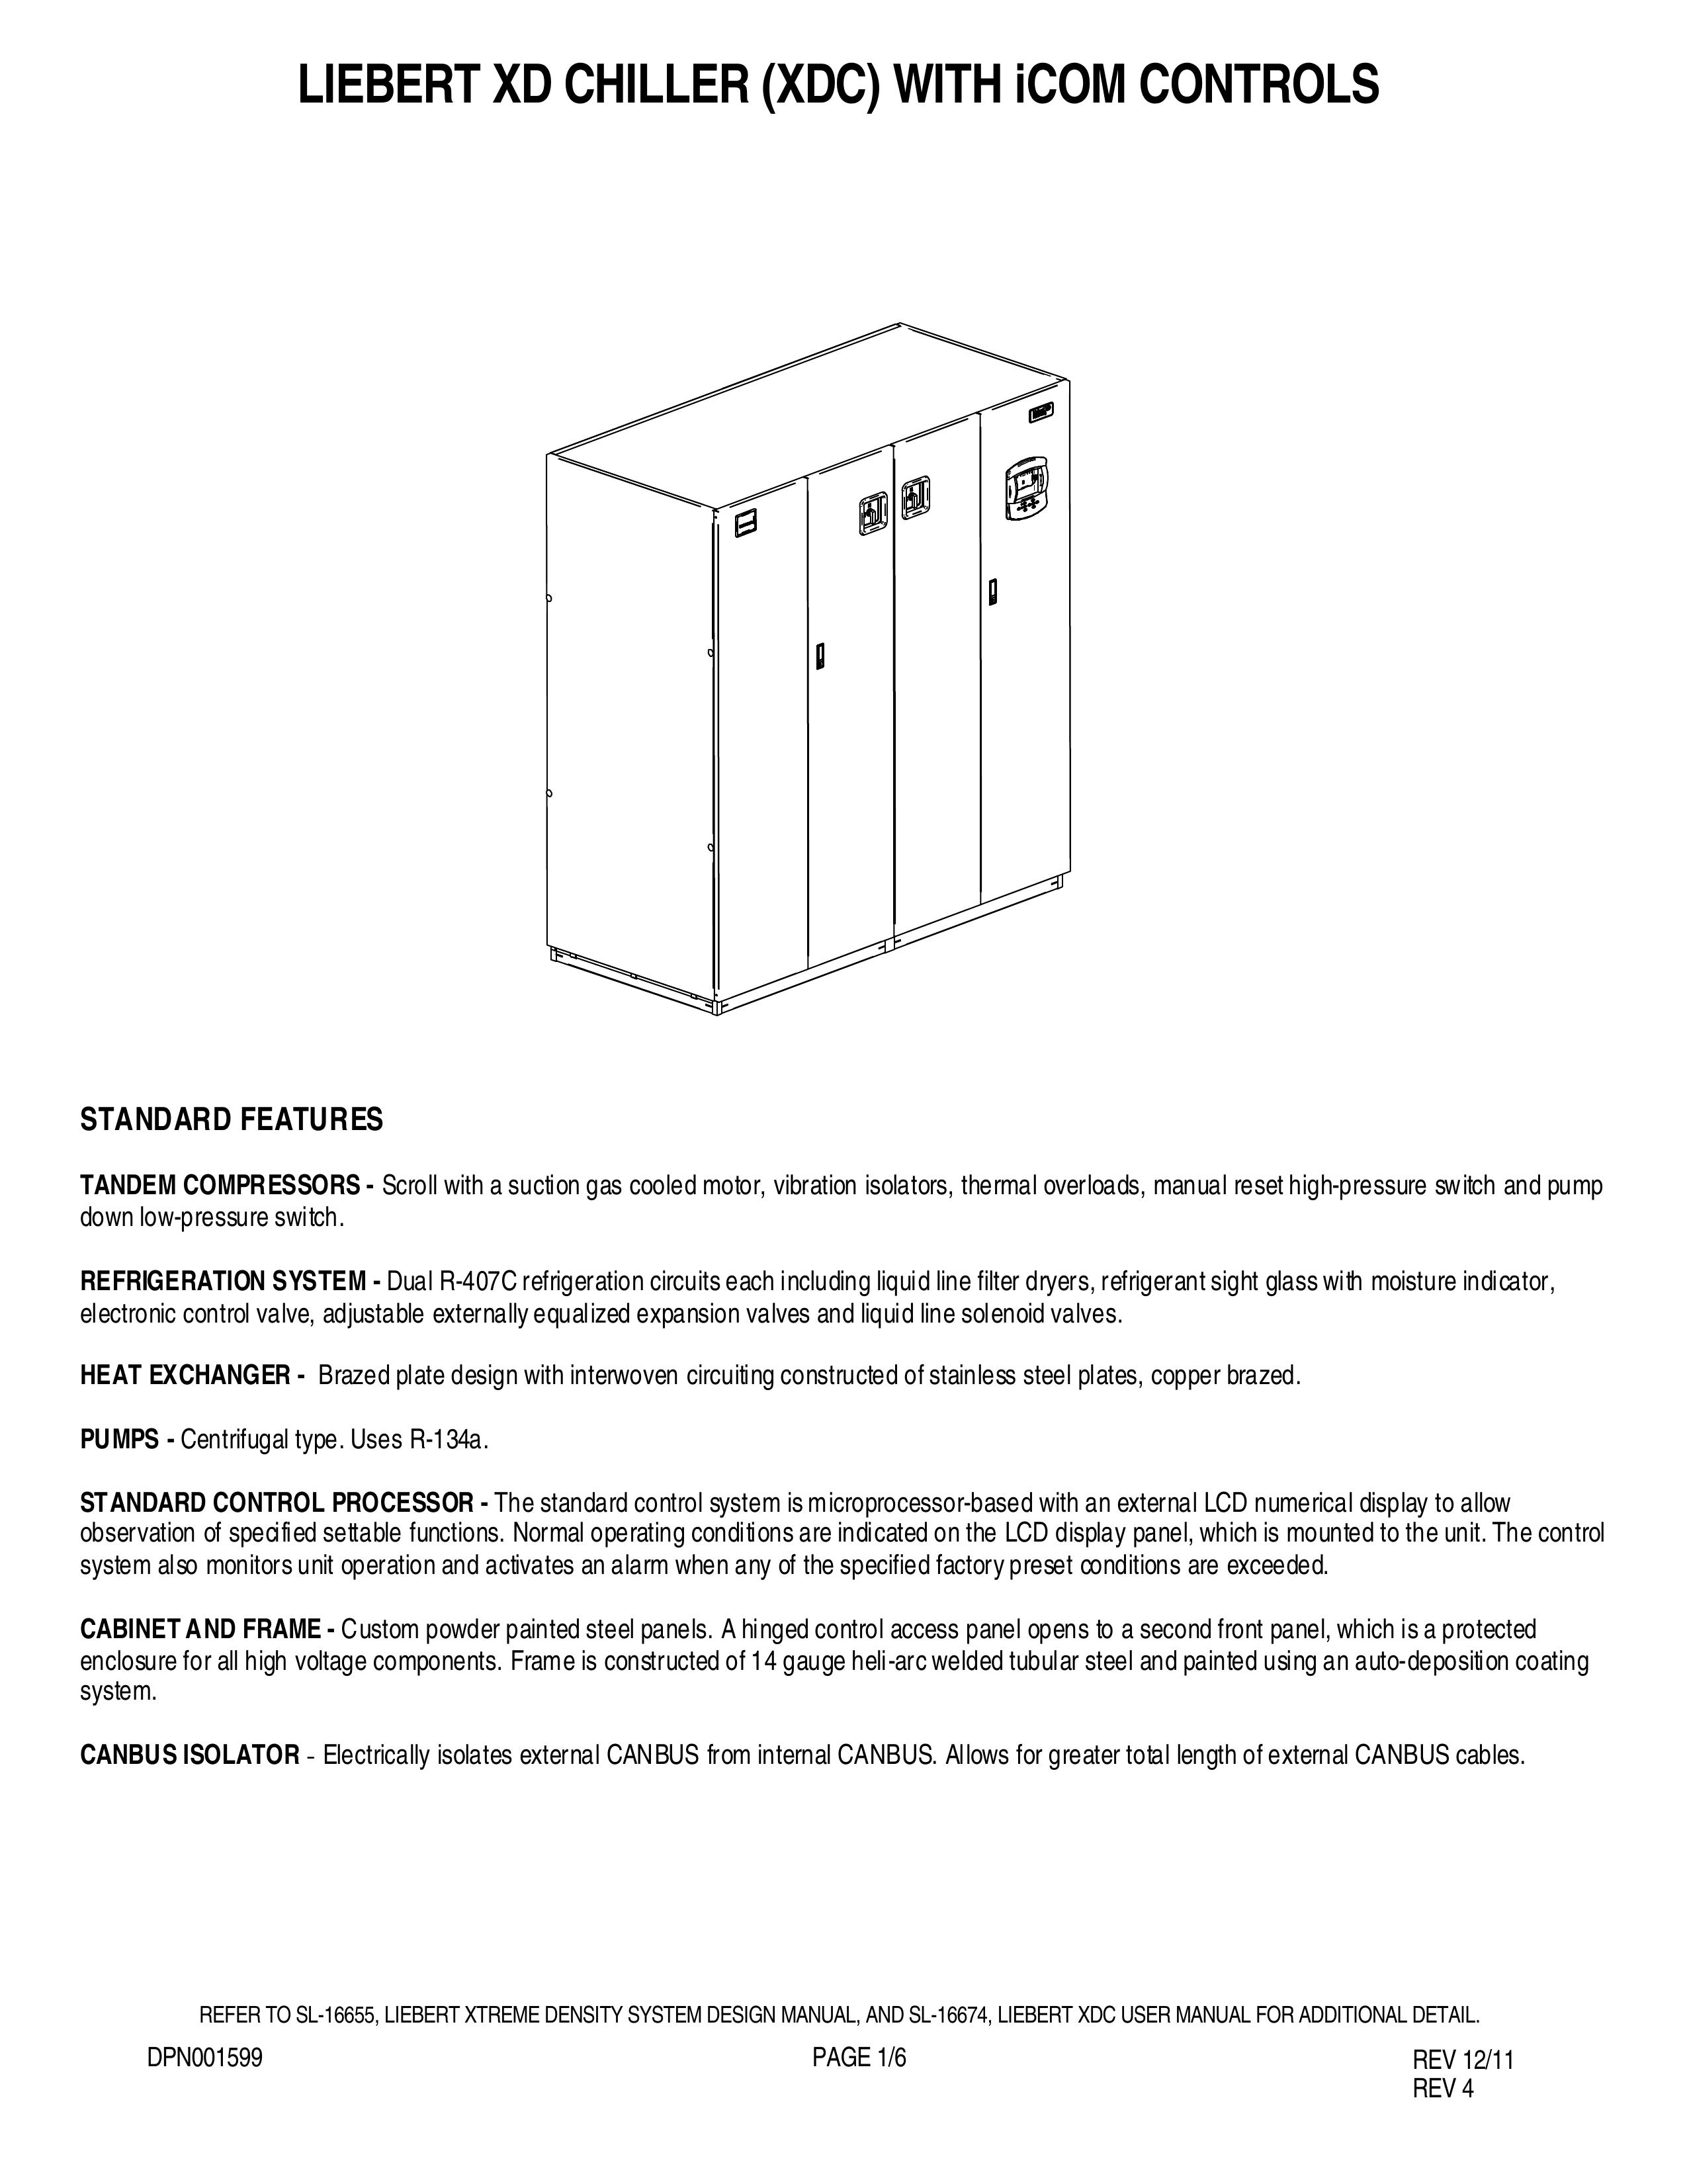 Liebert DPN001599 REV 12/11 Refrigerator User Manual